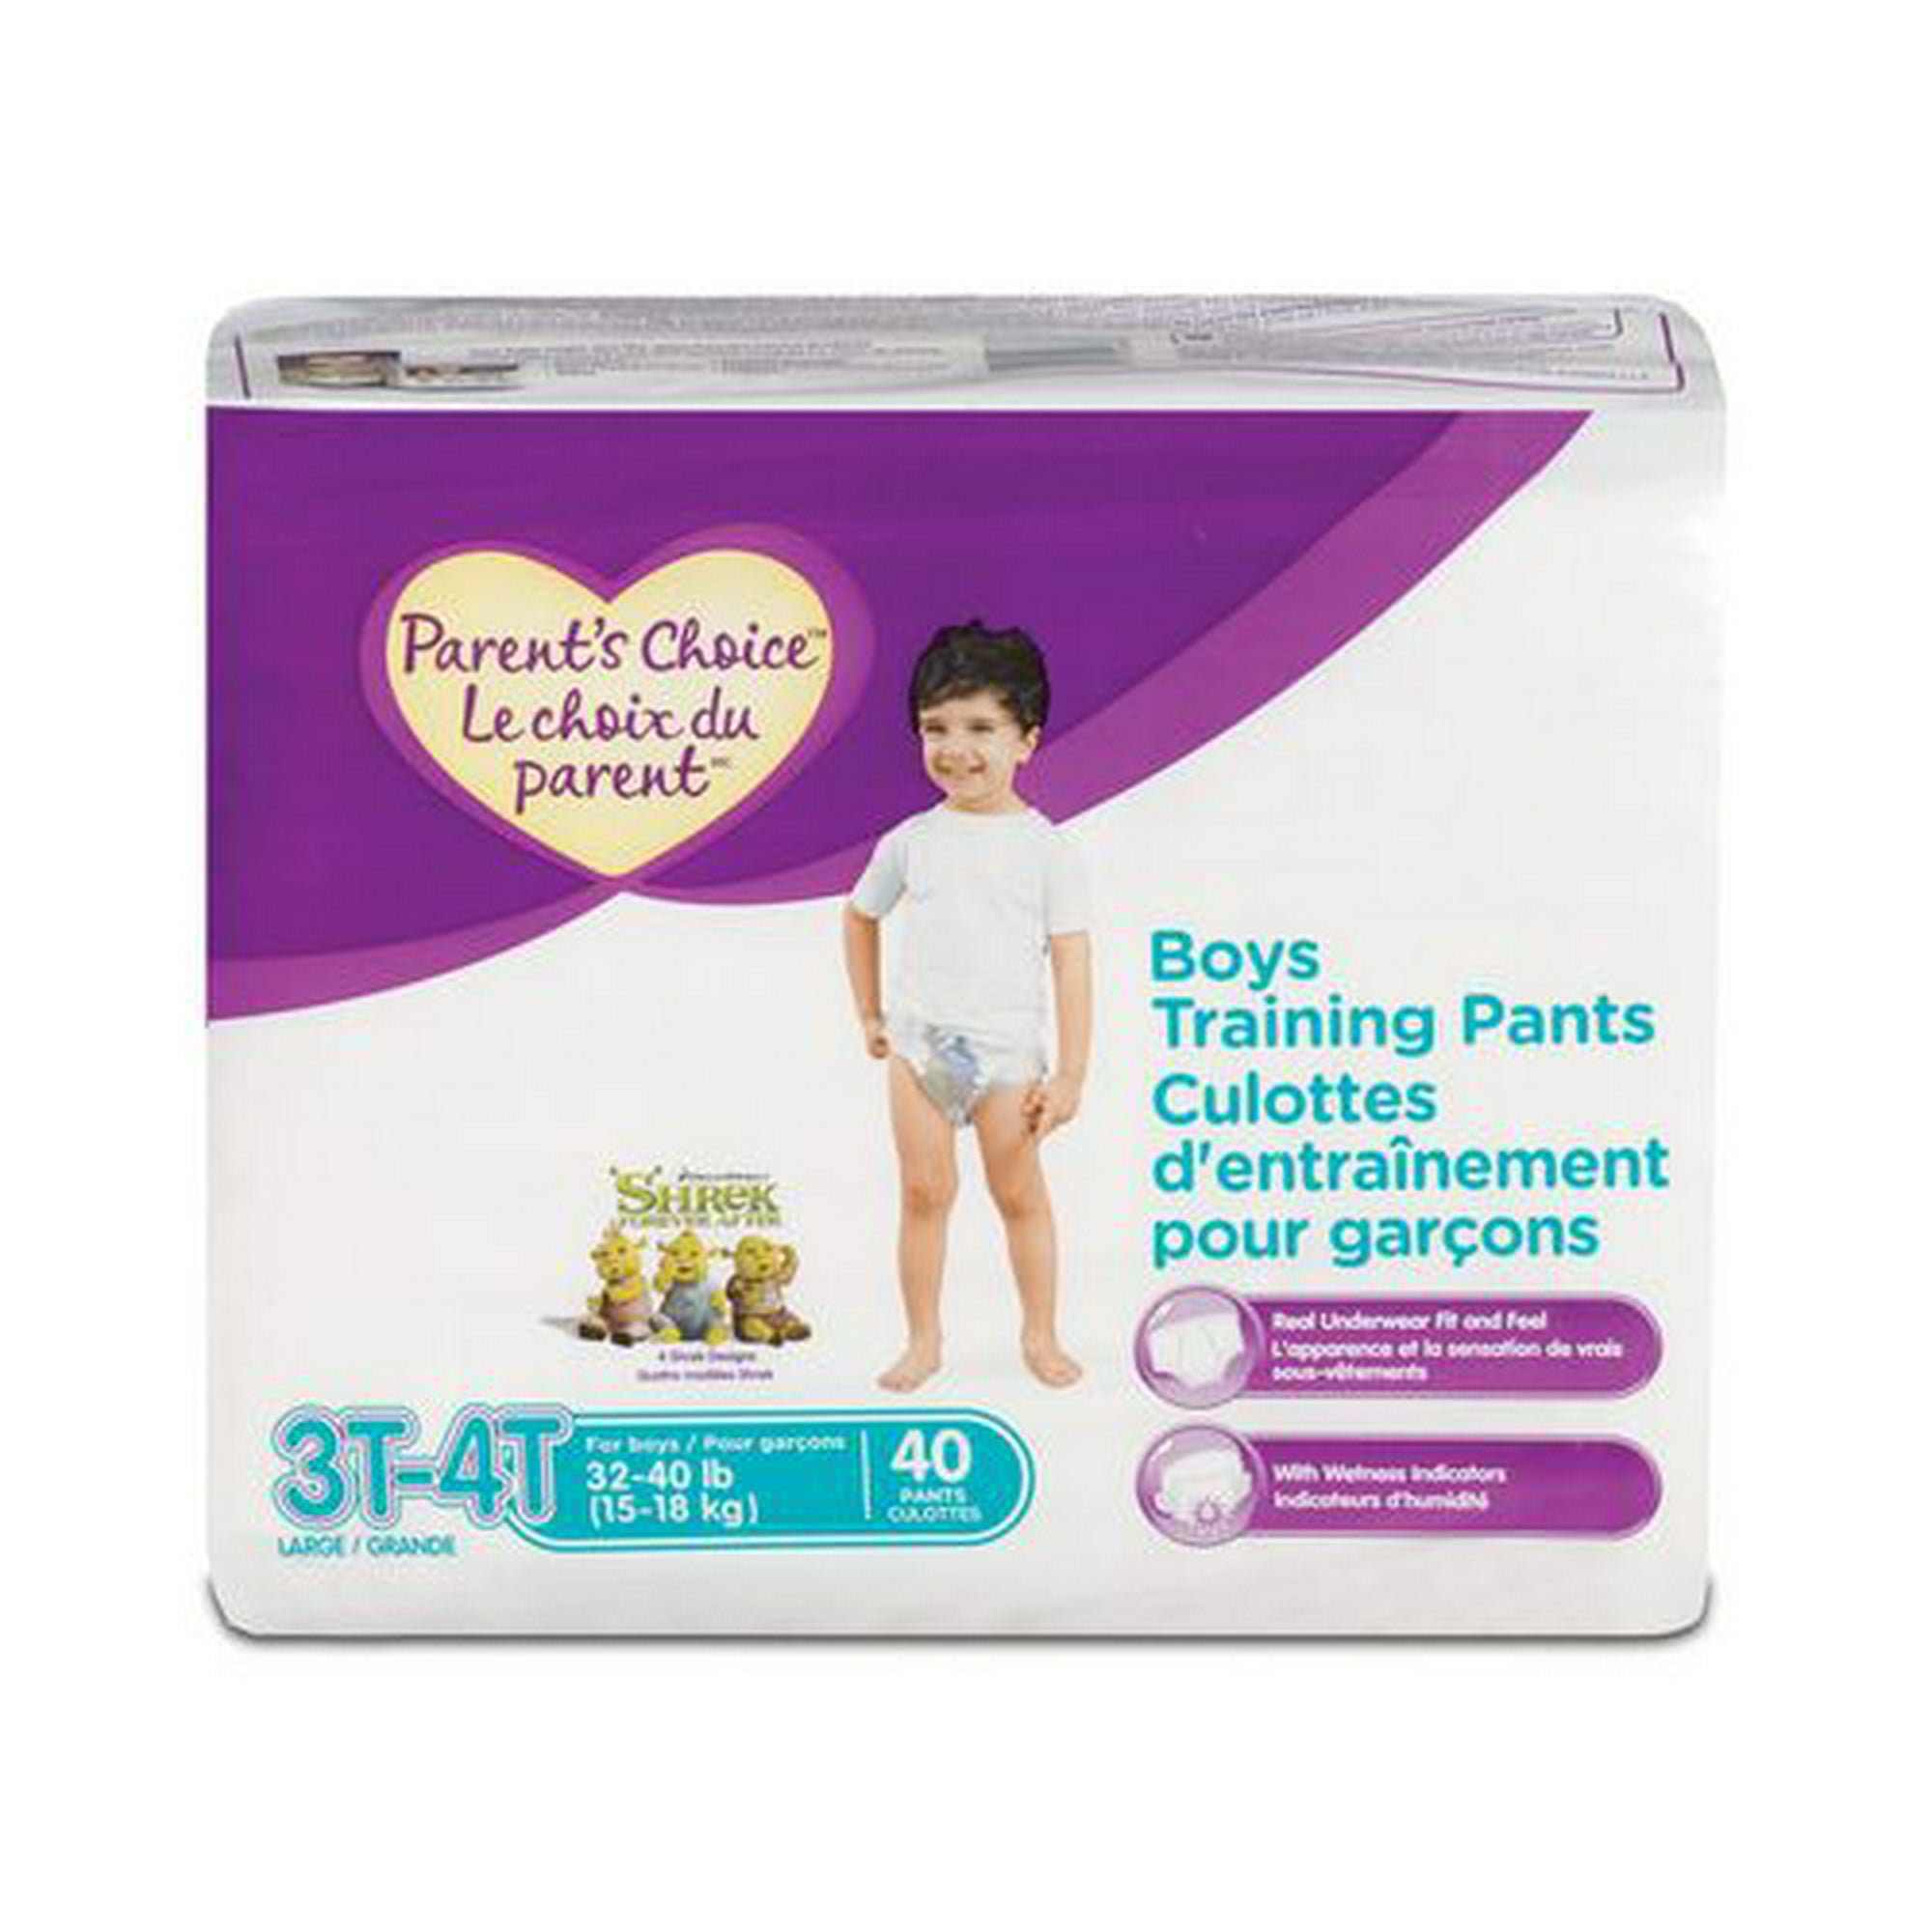 Parent's Choice Training Pants - Boys (choose Your Size) 